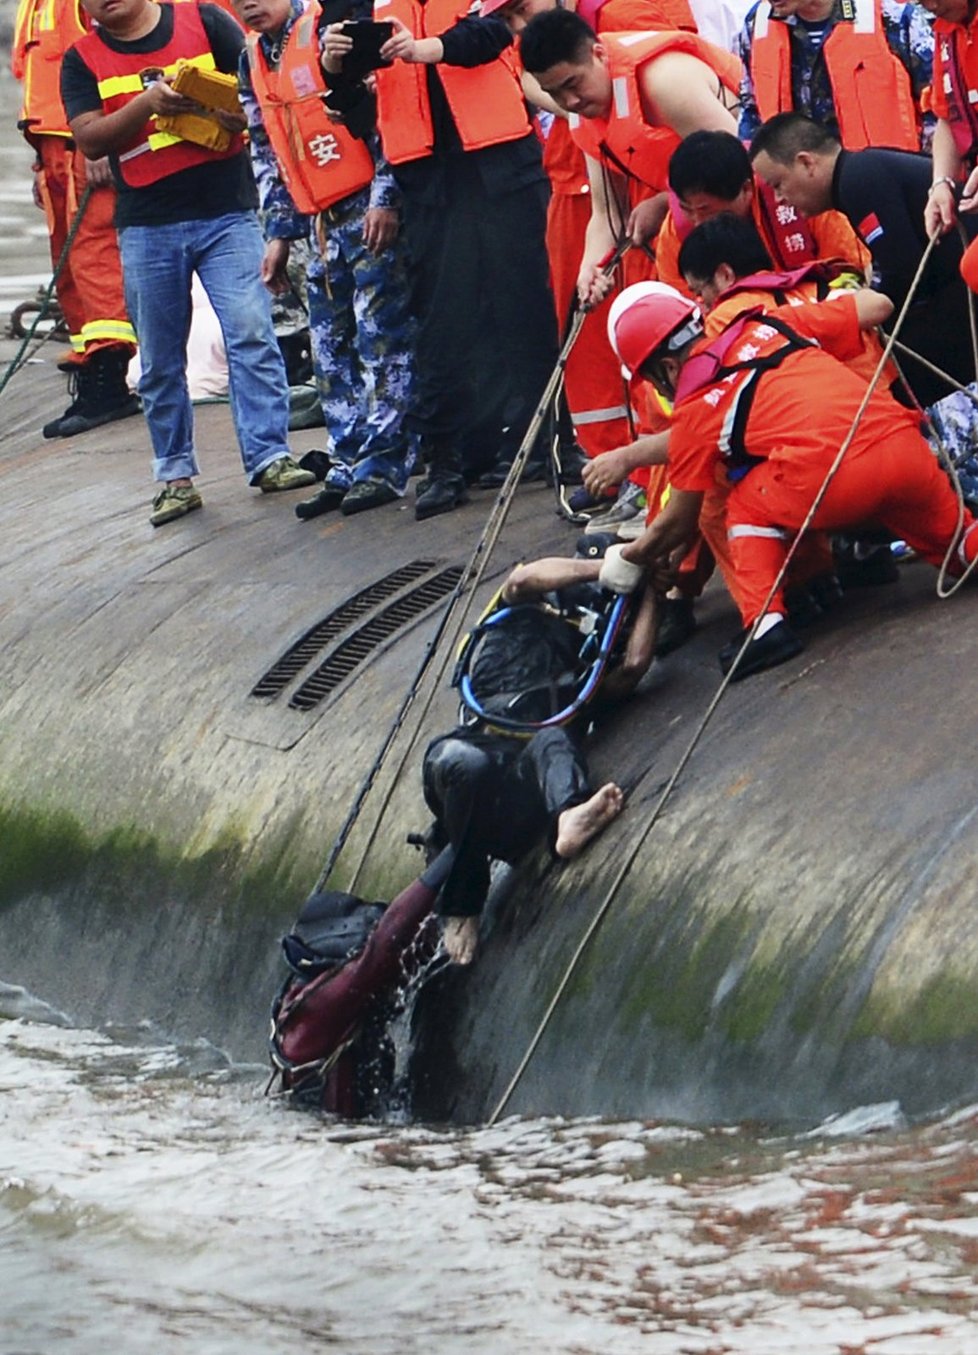 Havárie čínské výletní lodi, která plula po řece Jang-c-ťiang